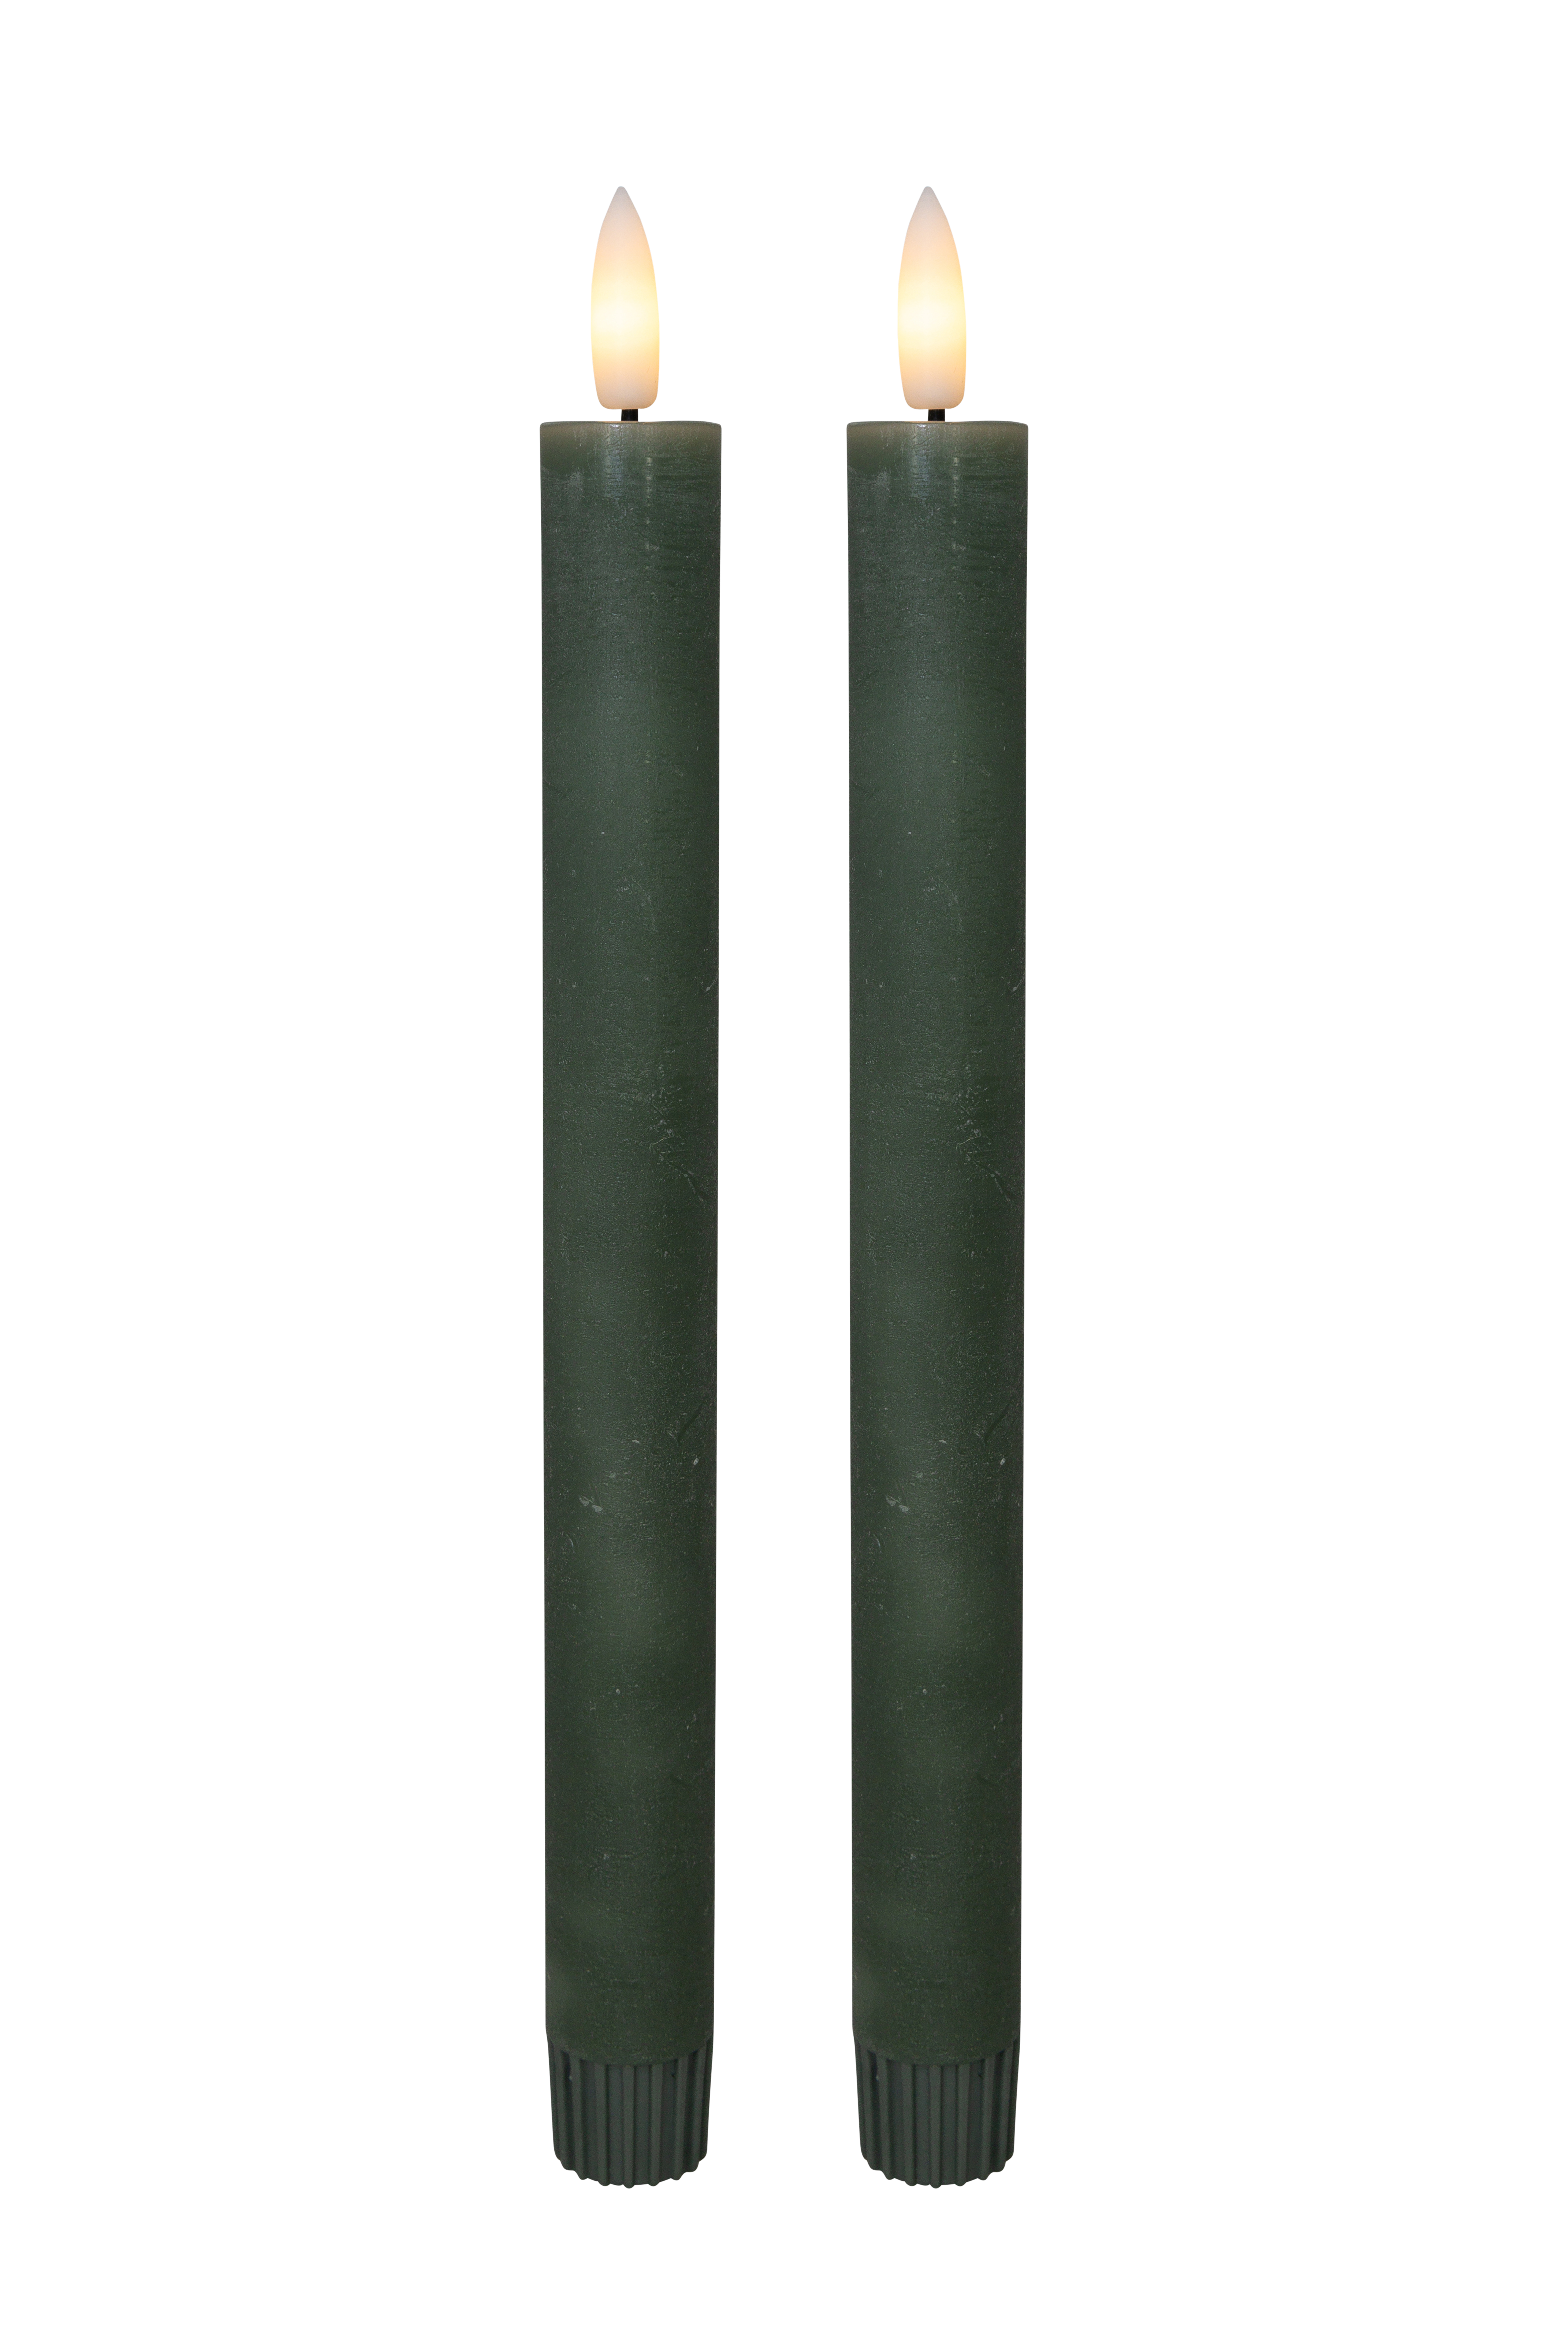 Cozzy kronelys, 3D flamme, 22,2 cm, grøn, 2 stk (bruges med fjernbetjening) thumbnail